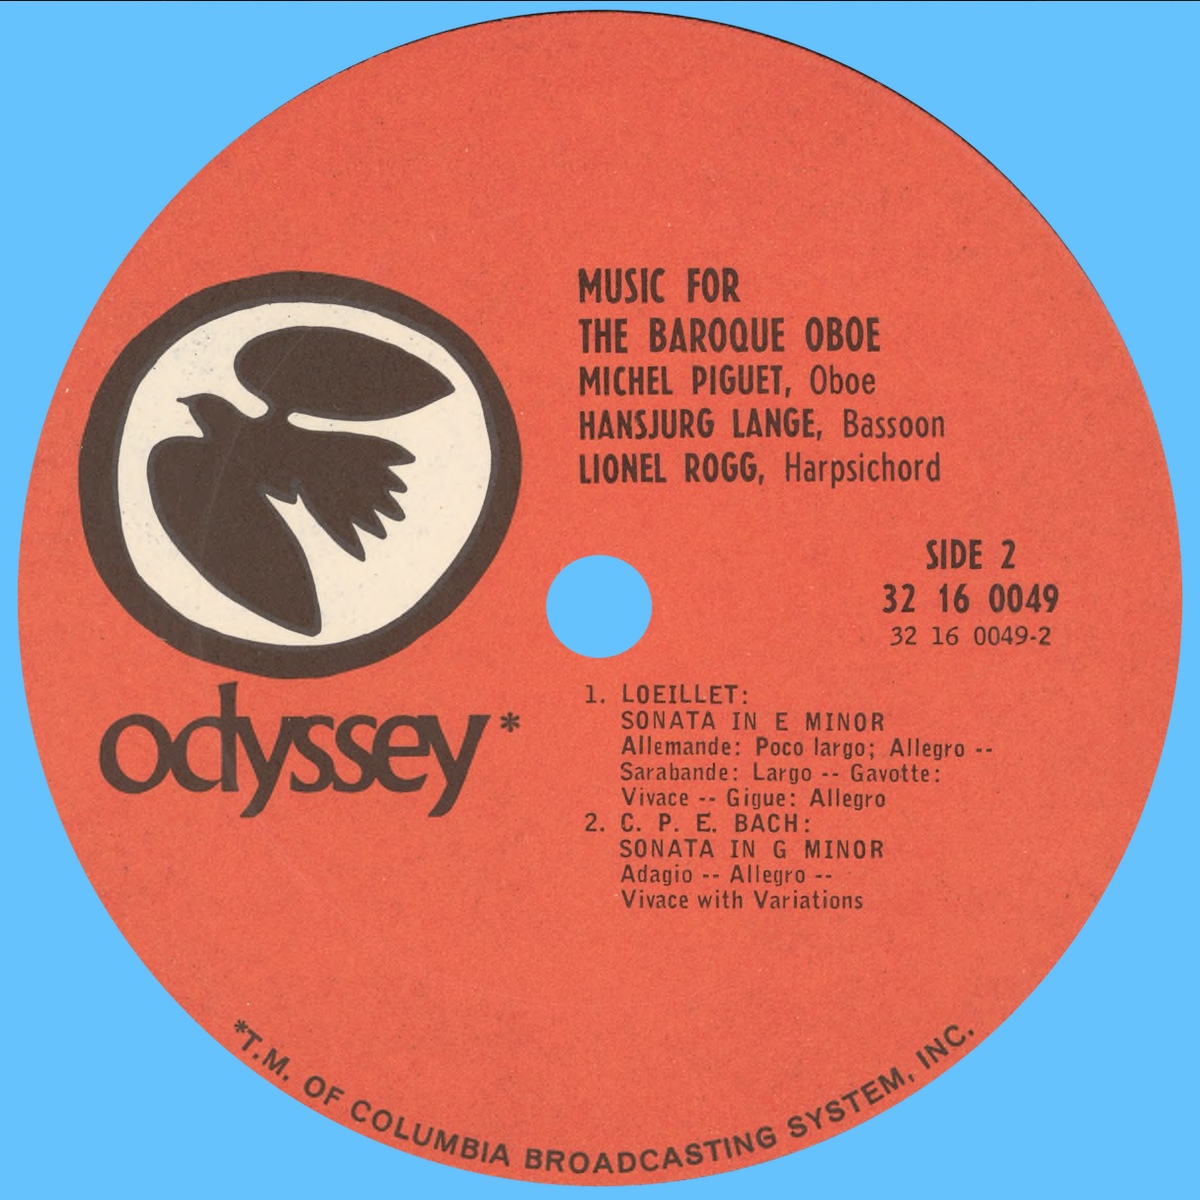 Étiquette verso du disque Odyssey 32 16 0050